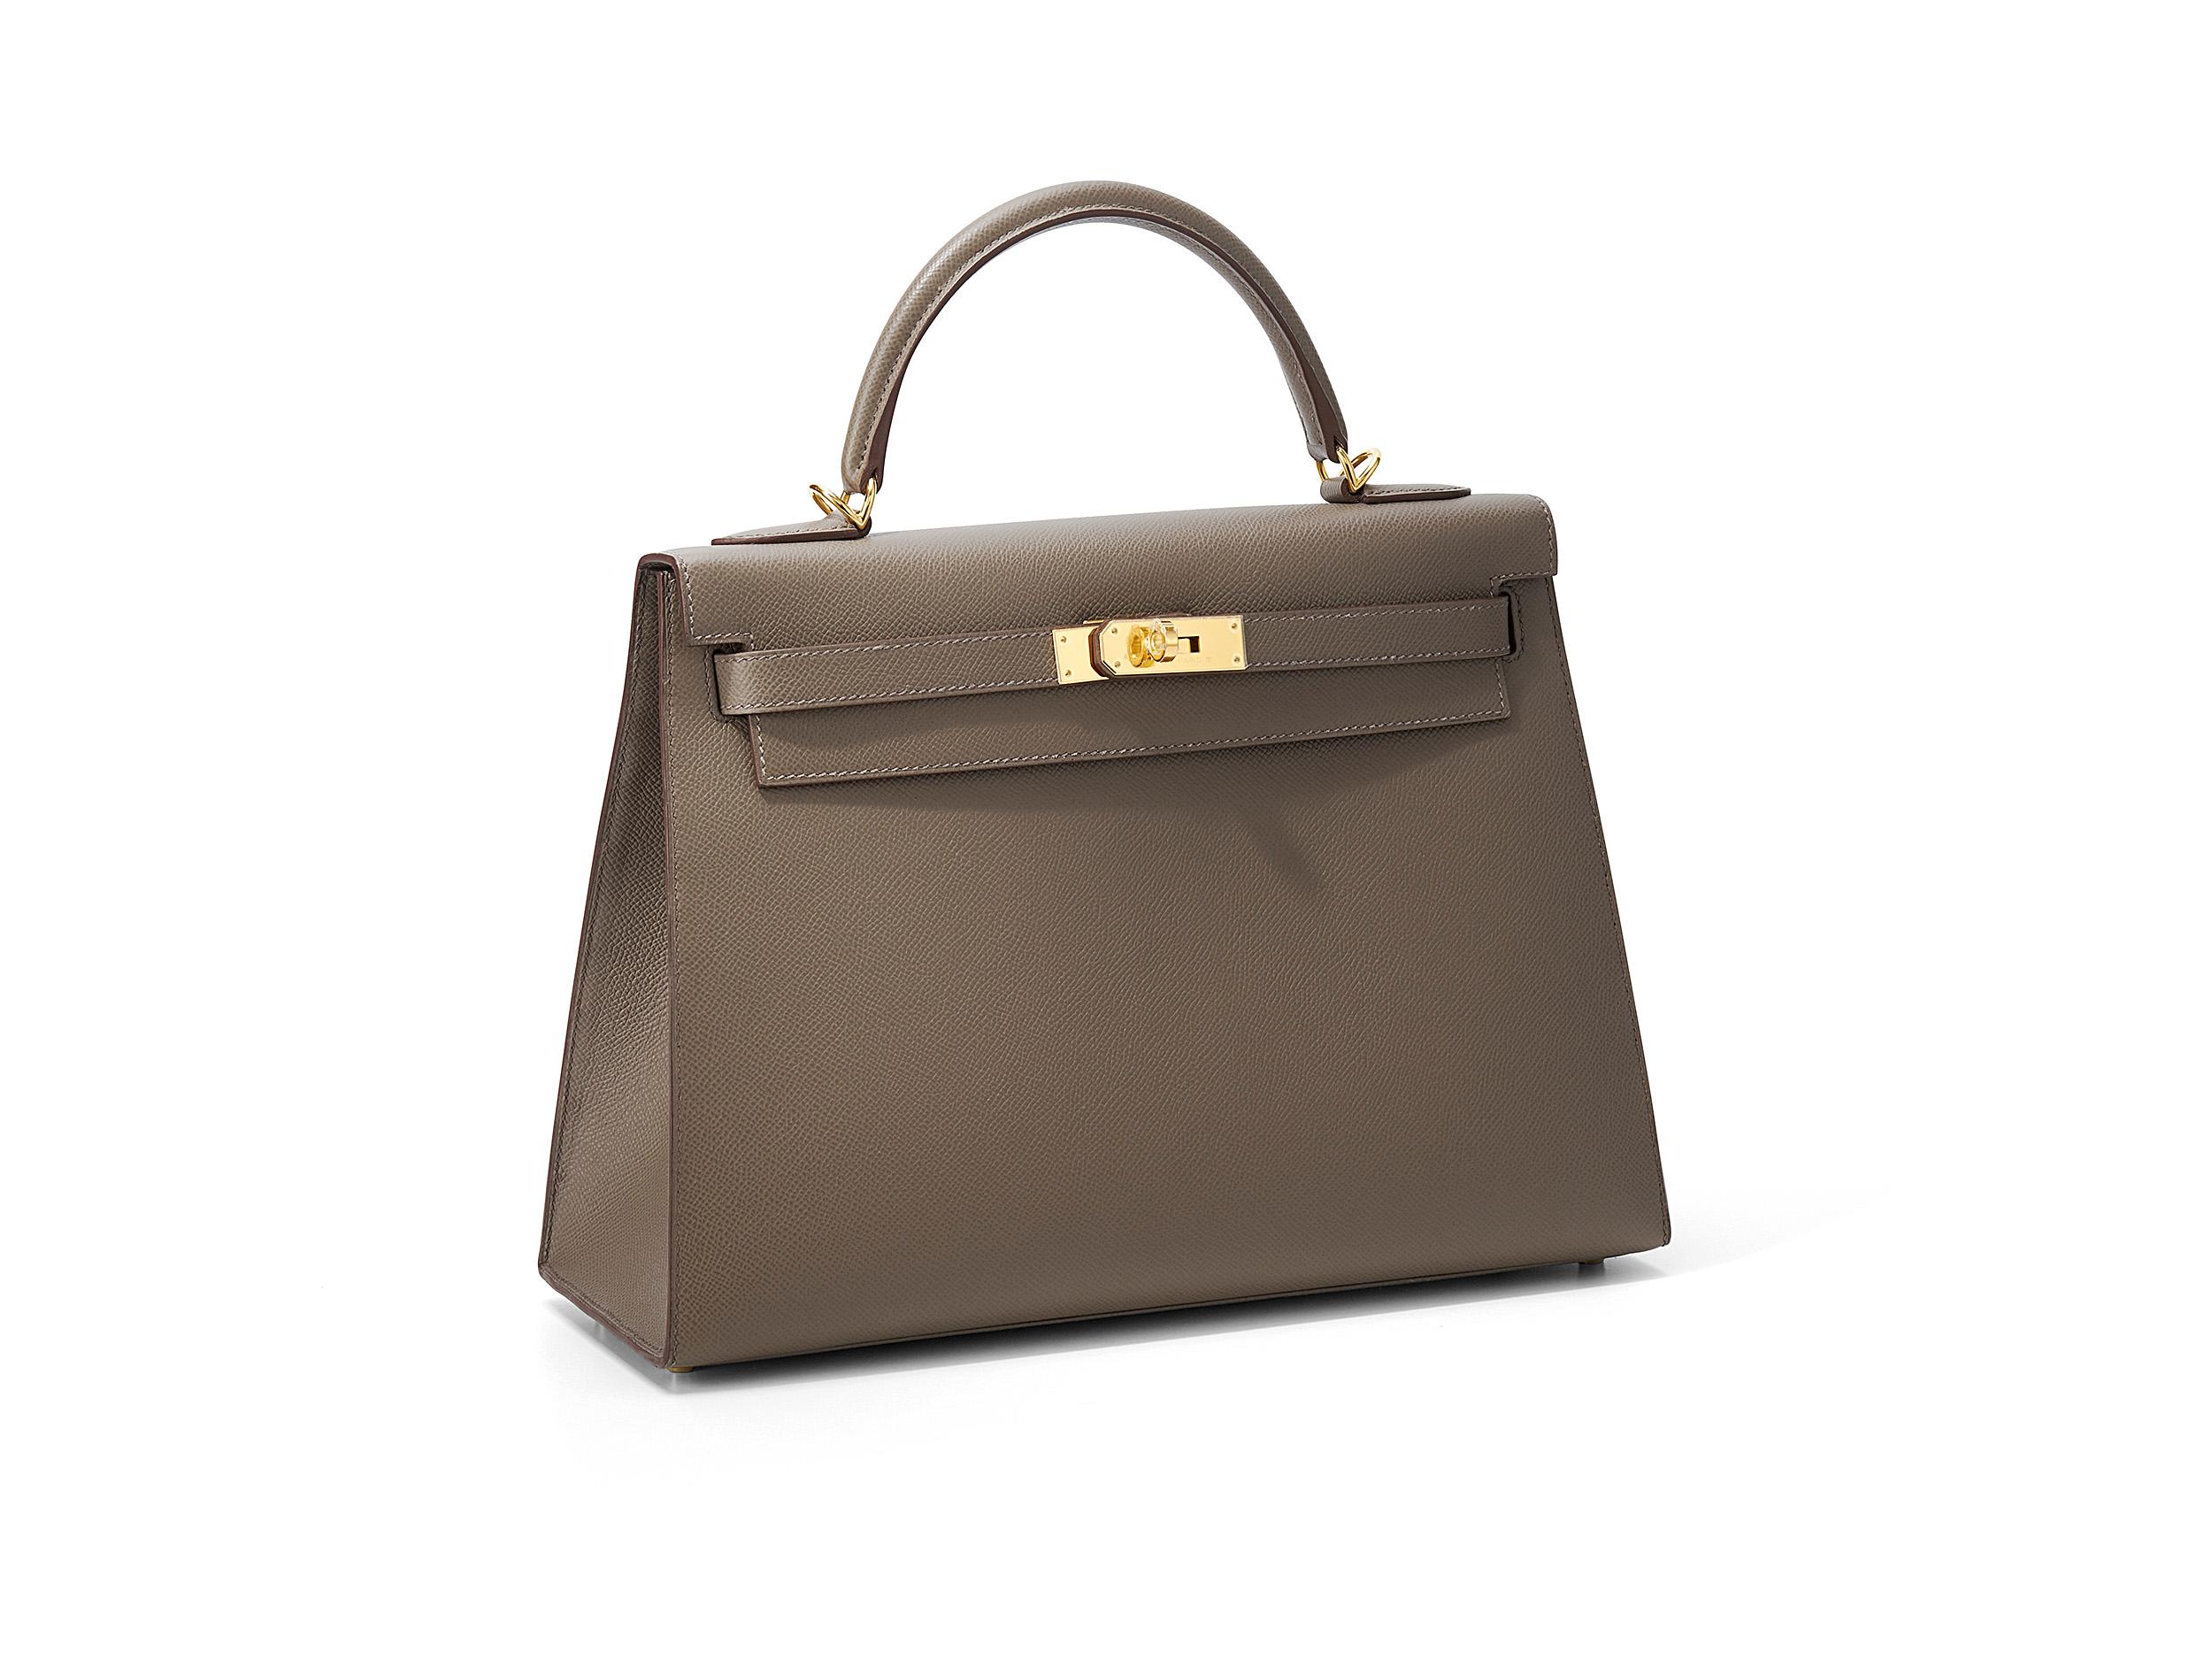 Hermès Kelly Sellier 32 en gris etain et cuir d'epsom avec quincaillerie dorée. Le sac n'a pas été porté et est livré dans son intégralité, avec le reçu original.

Timbre Y (2020) 

